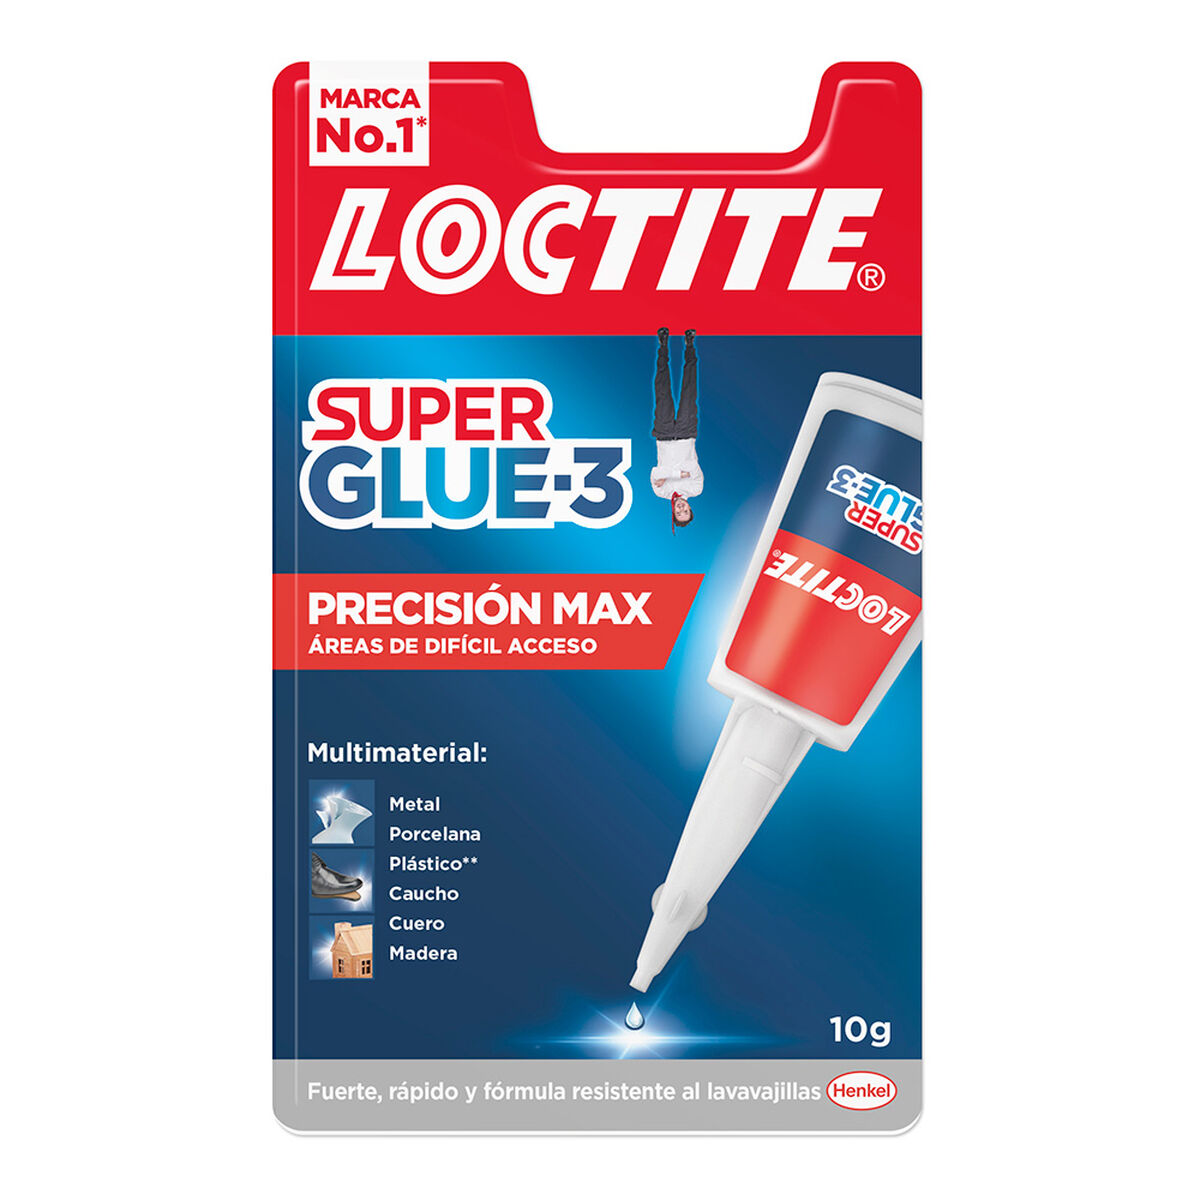 Colle Loctite precision max 10 g